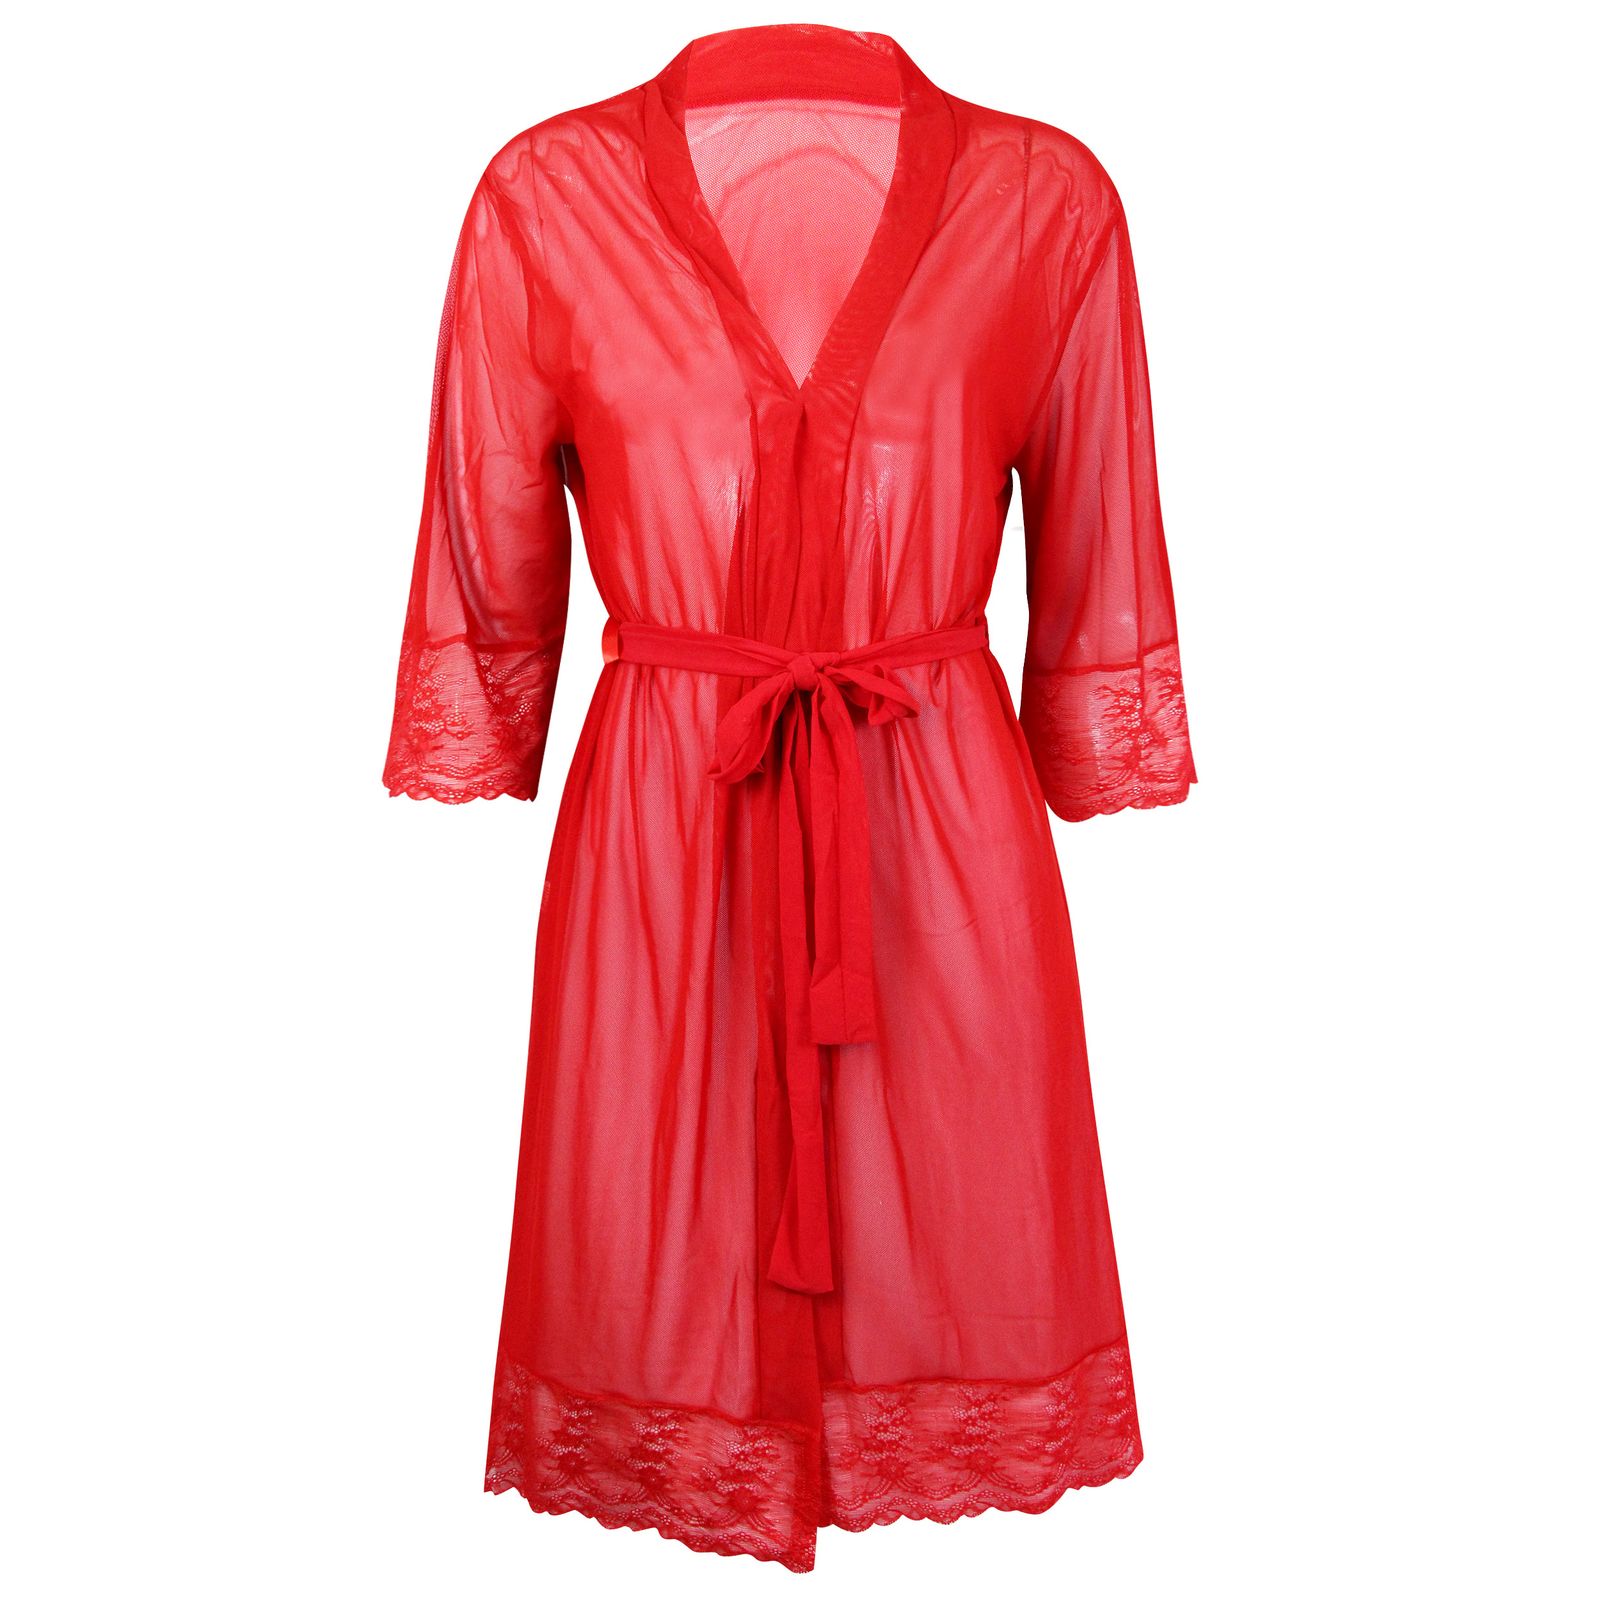 لباس خواب زنانه ماییلدا مدل 3685-804 رنگ قرمز -  - 2